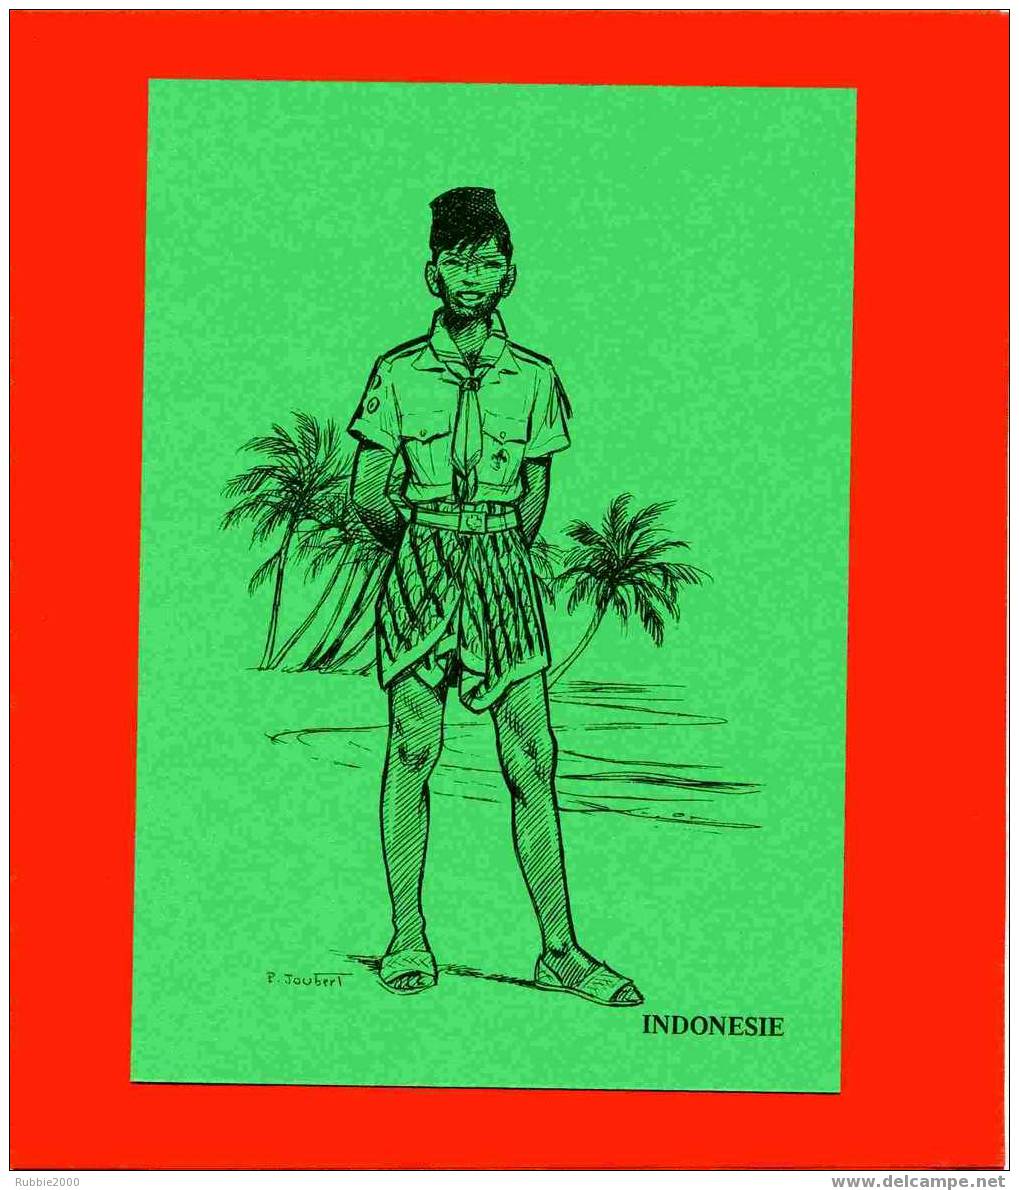 INDONESIE DESSIN ORIGINAL DE JOUBERT 1983 REUNION DES SCOUTS COLLECTIONNEURS A BULLET EN SUISSE SCOUTISME UNIFORME - Scoutisme